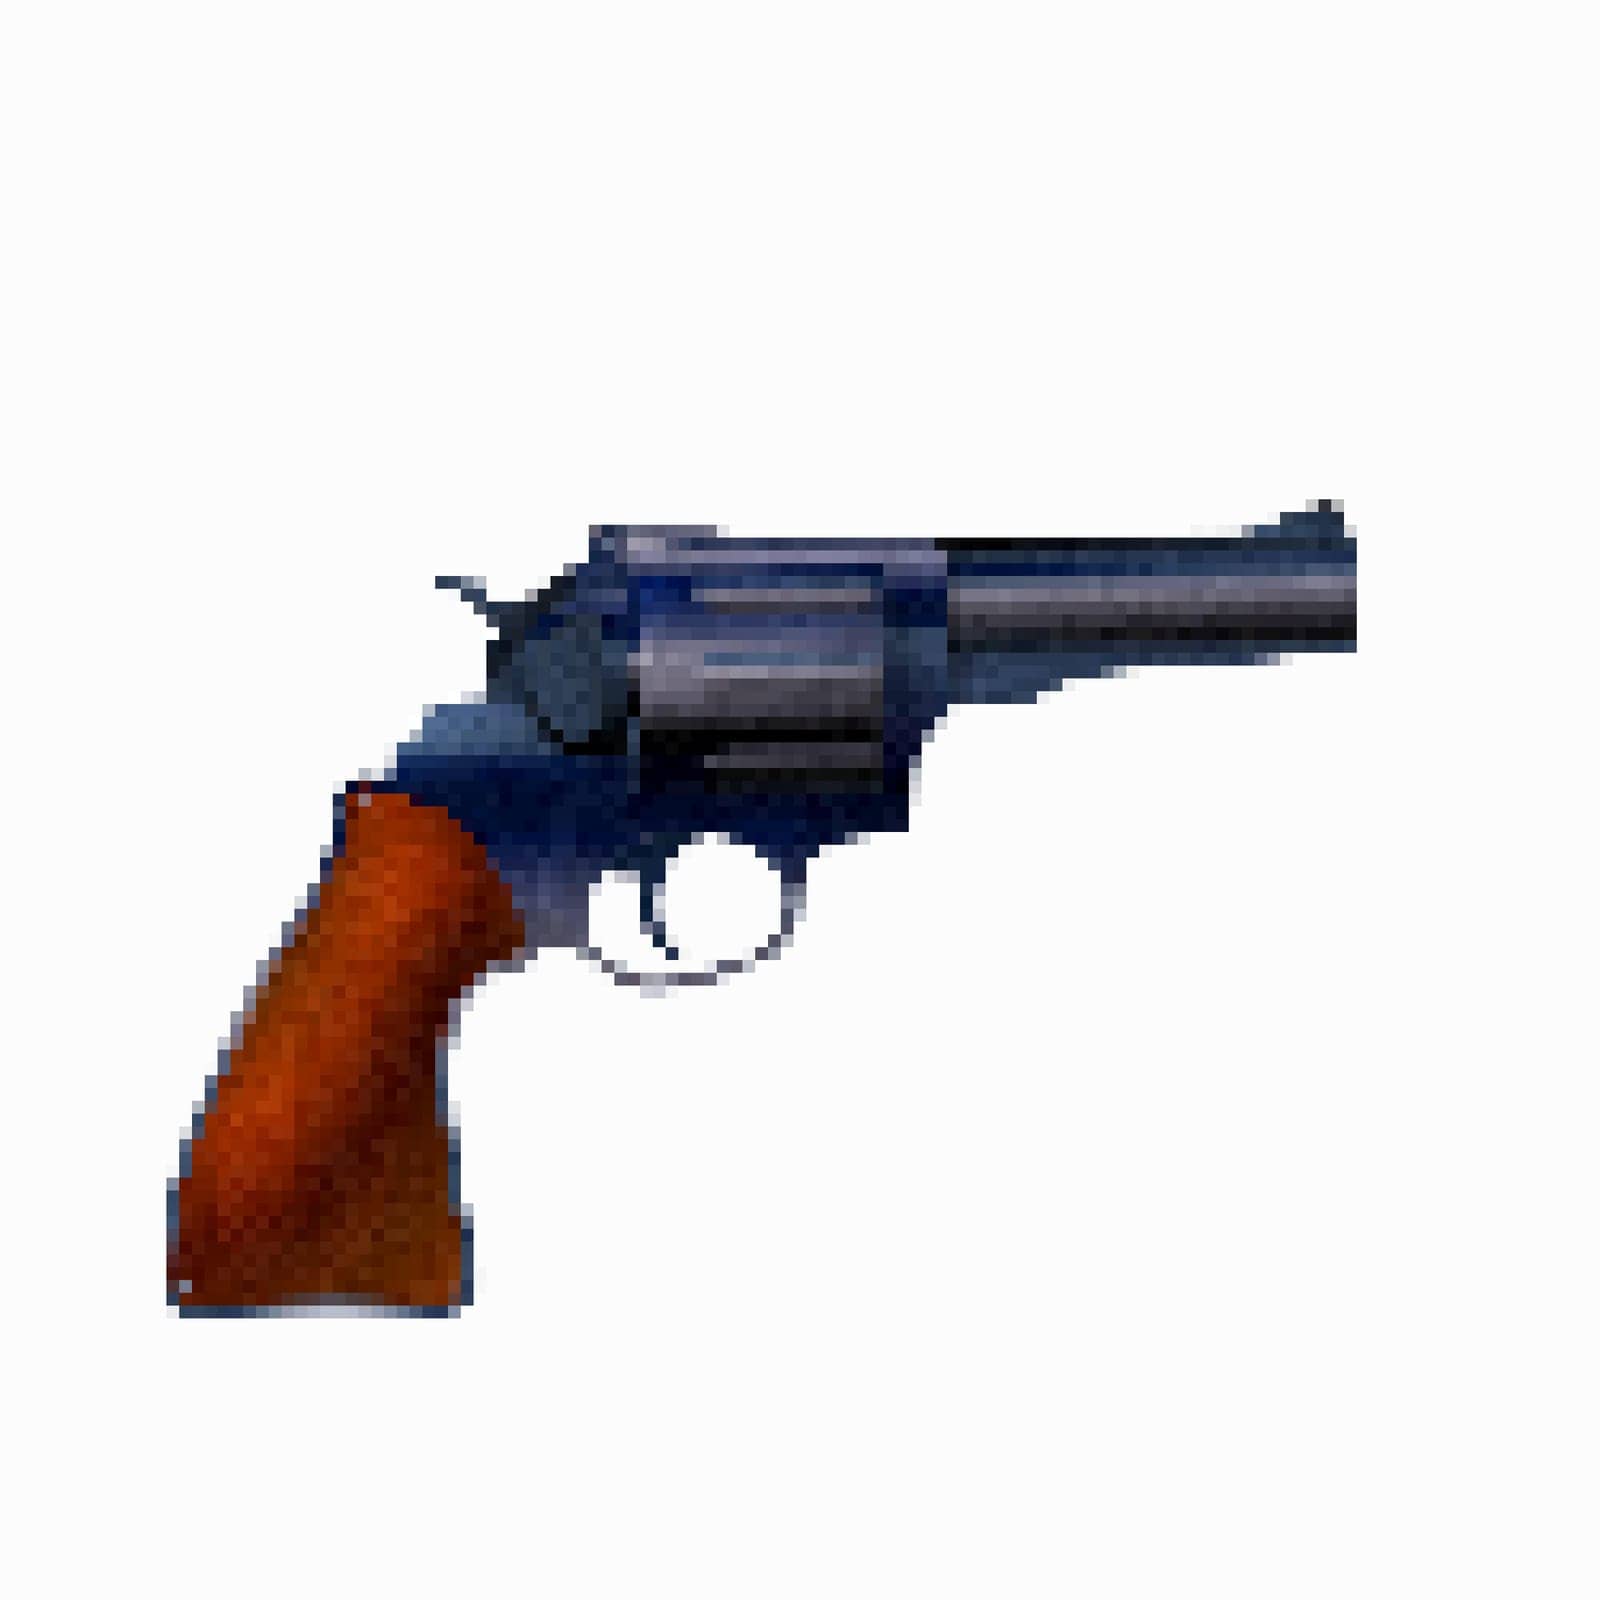 Pistol pixel art icon by Lirch